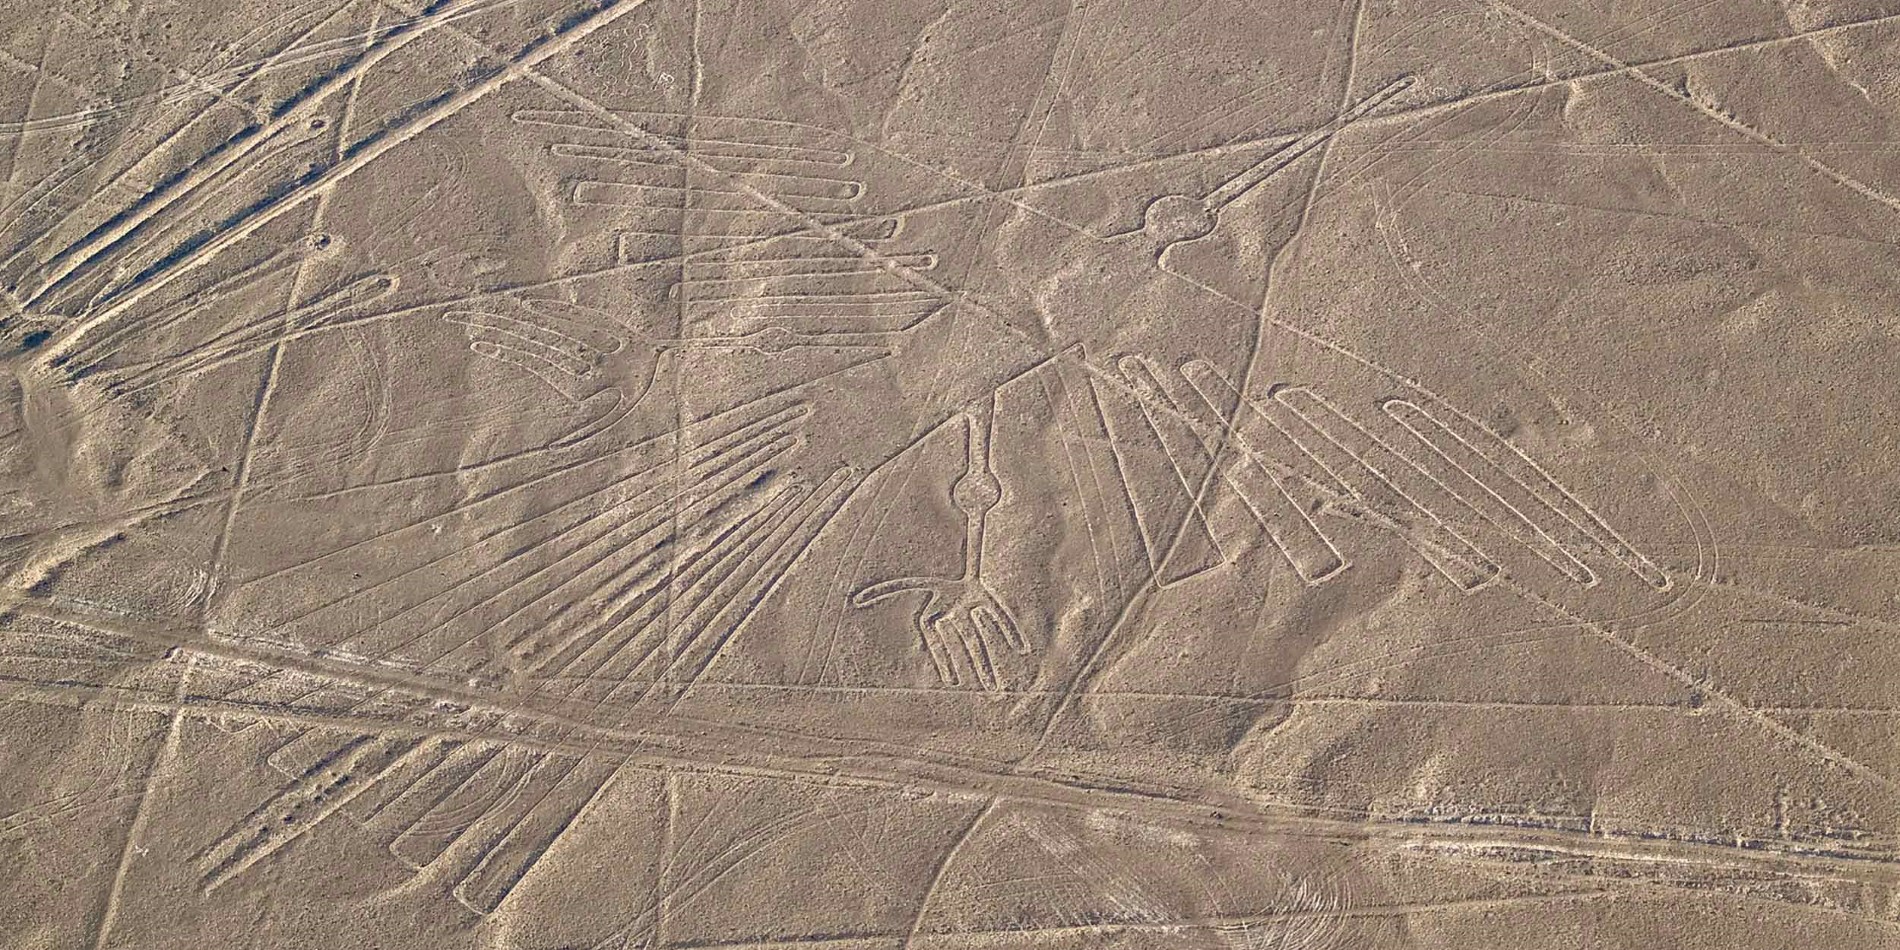 Condor geoglyph, Nazca lines, Peru